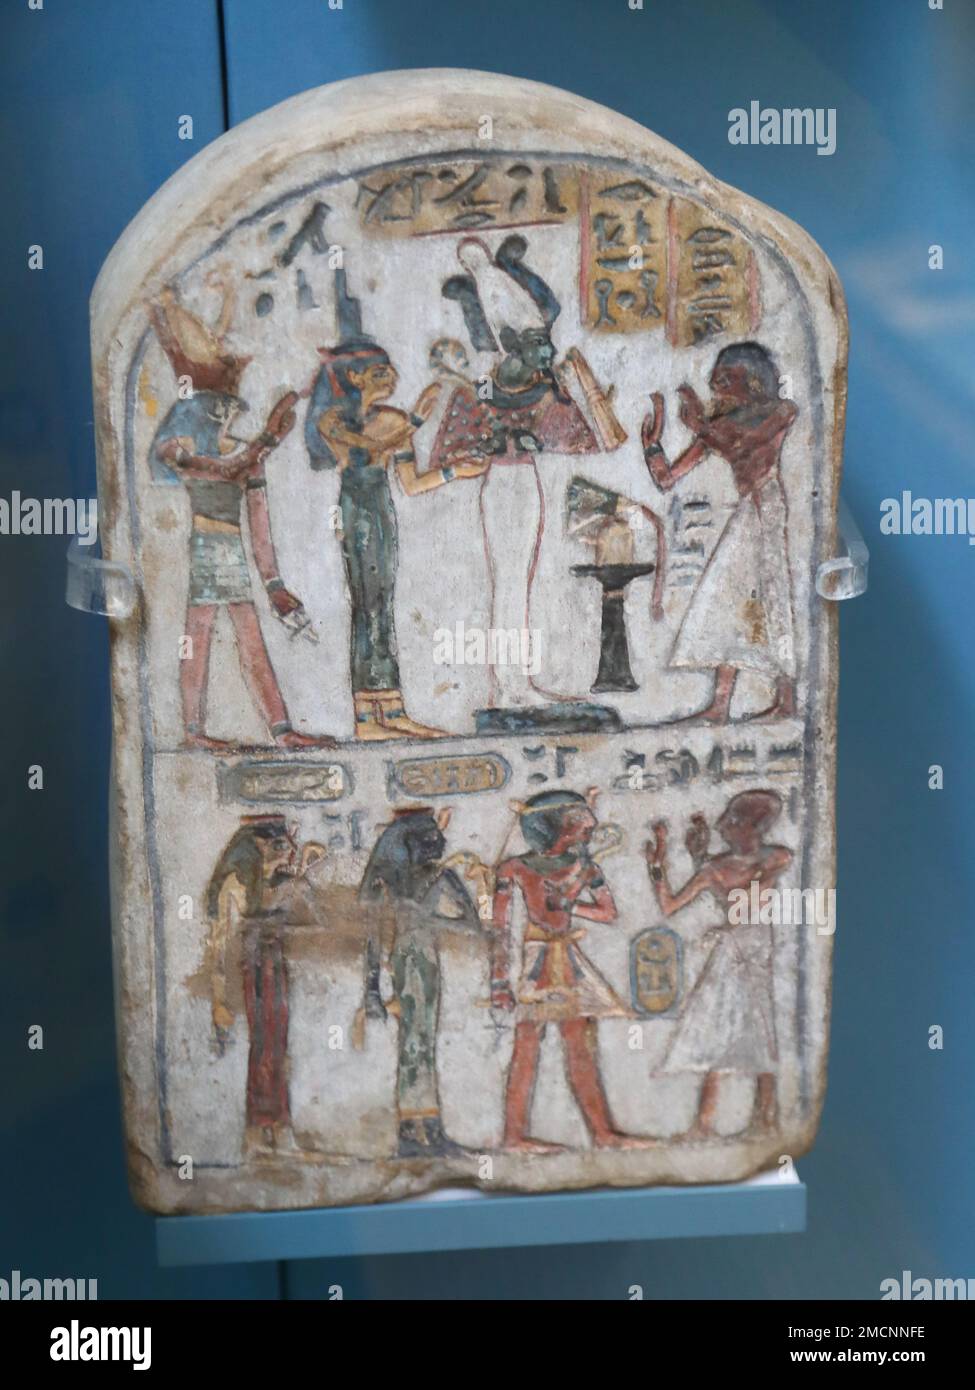 Stela en pierre calcaire peinte en Égypte montrant l'adoration des membres décédés de la famille royale de la dynastie 18th au British Museum, Londres, Royaume-Uni Banque D'Images